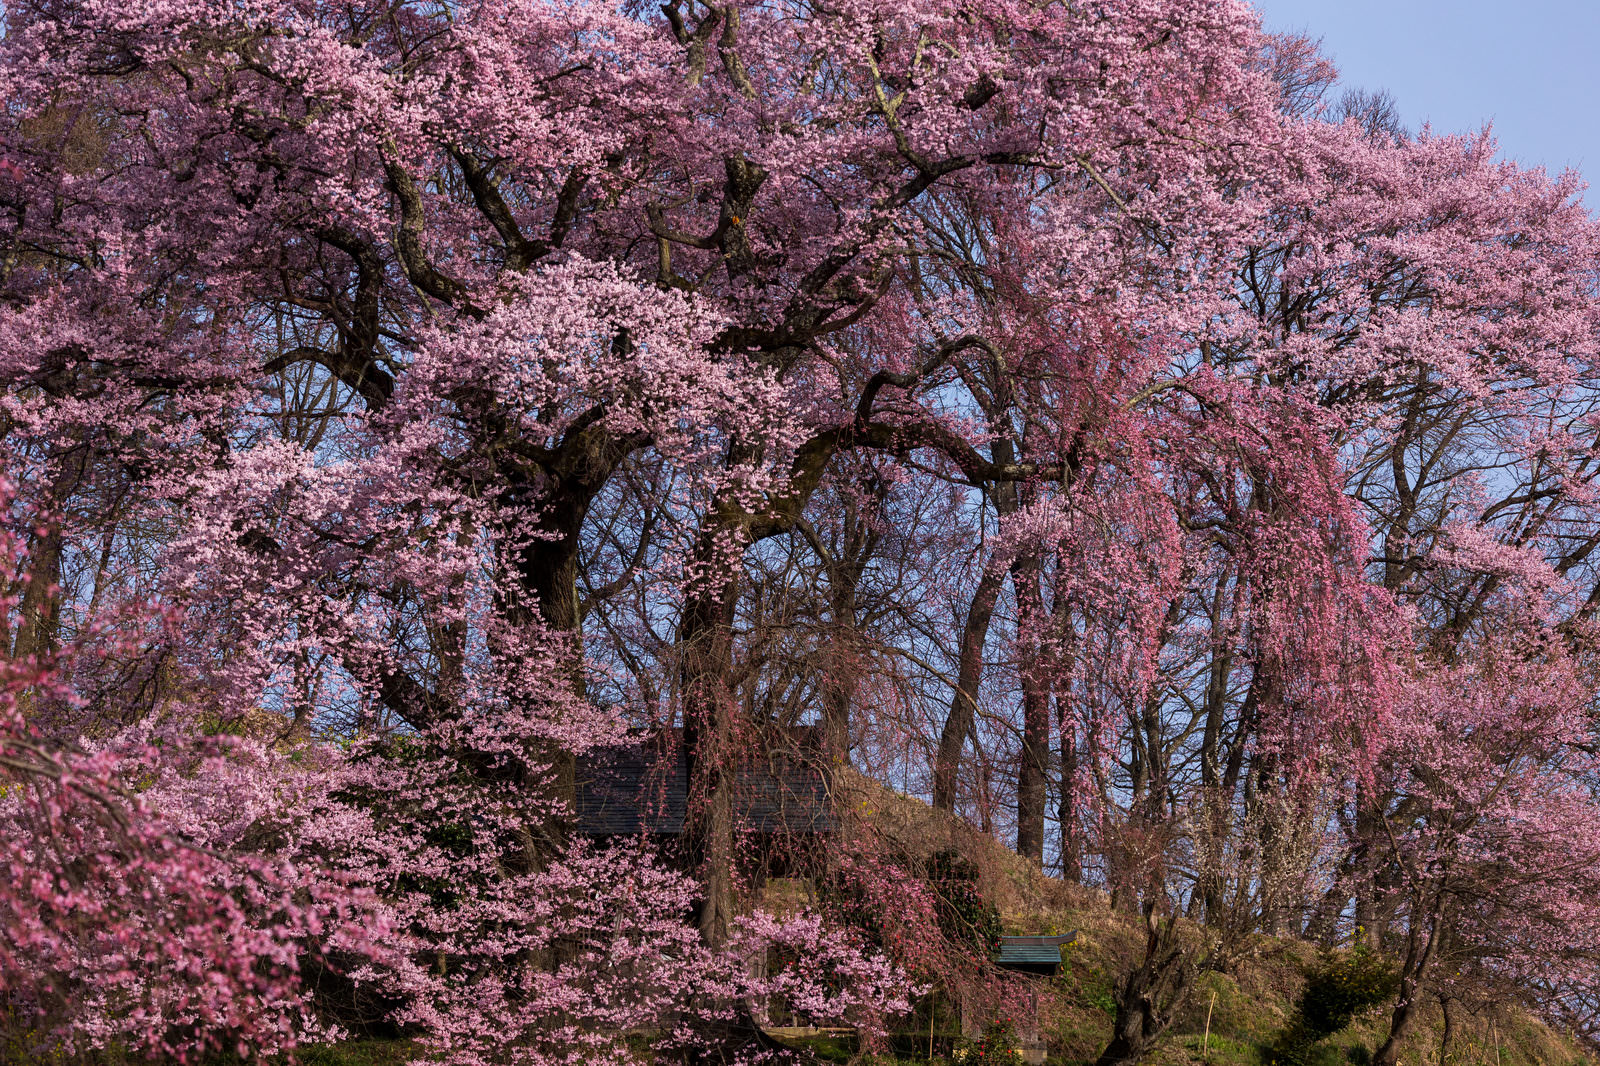 「二本の桜が夫婦のように寄り添き咲く「天神夫婦桜」 | フリー素材のぱくたそ」の写真